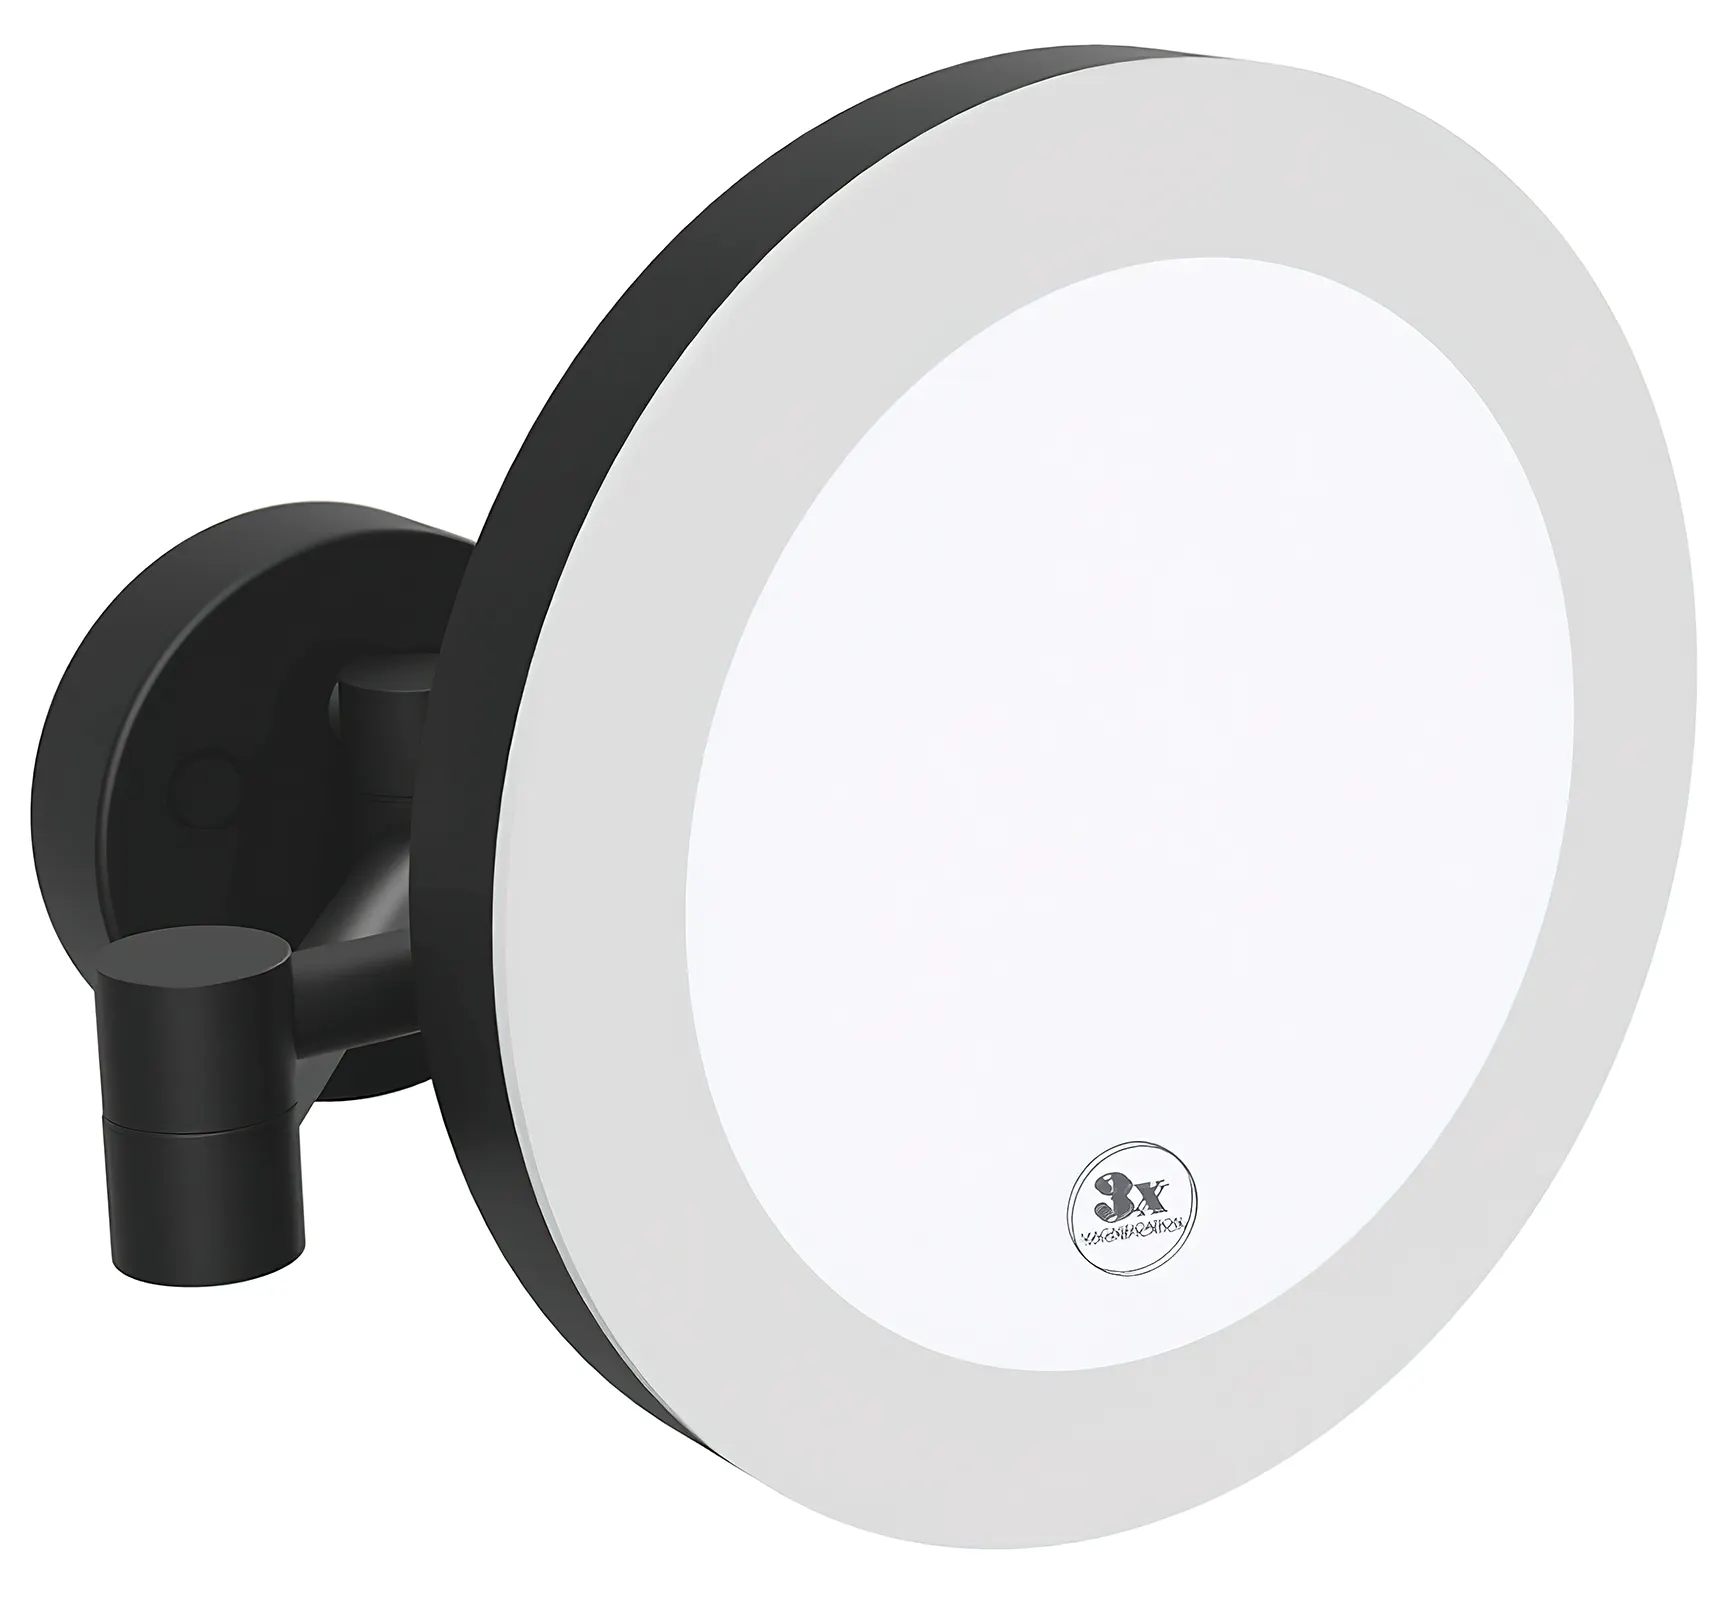 Bemeta Dark 116101770 Косметическое зеркало 3x настенное с LED подсветкой (чёрный)